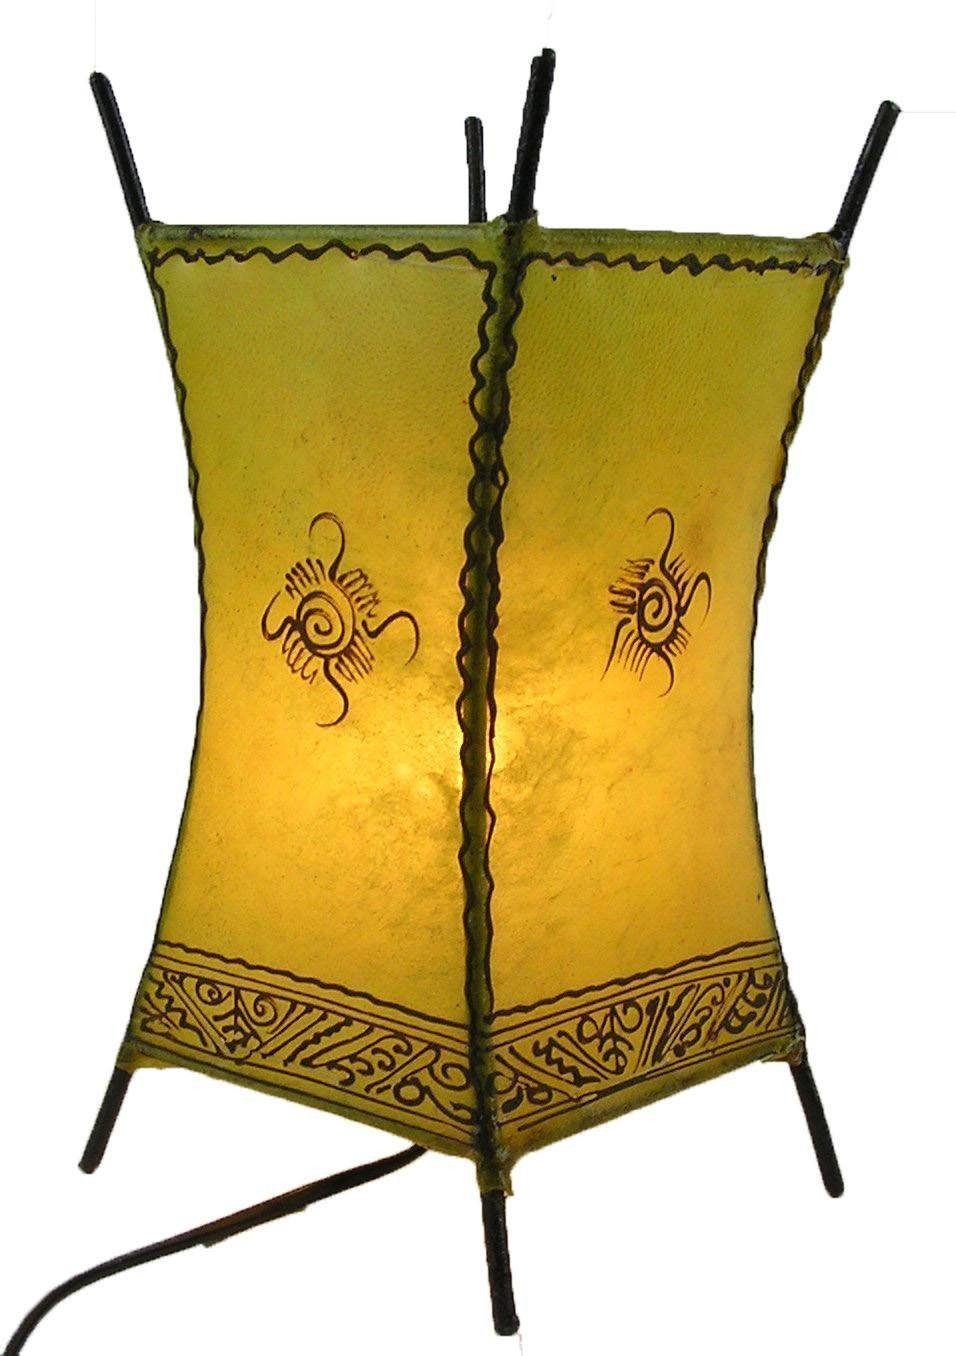 SIMANDRA Stehlampe Carree Sonne, Ambilight, ohne Leuchtmittel, Warmweiß, marokkanische Lederlampe Gelb